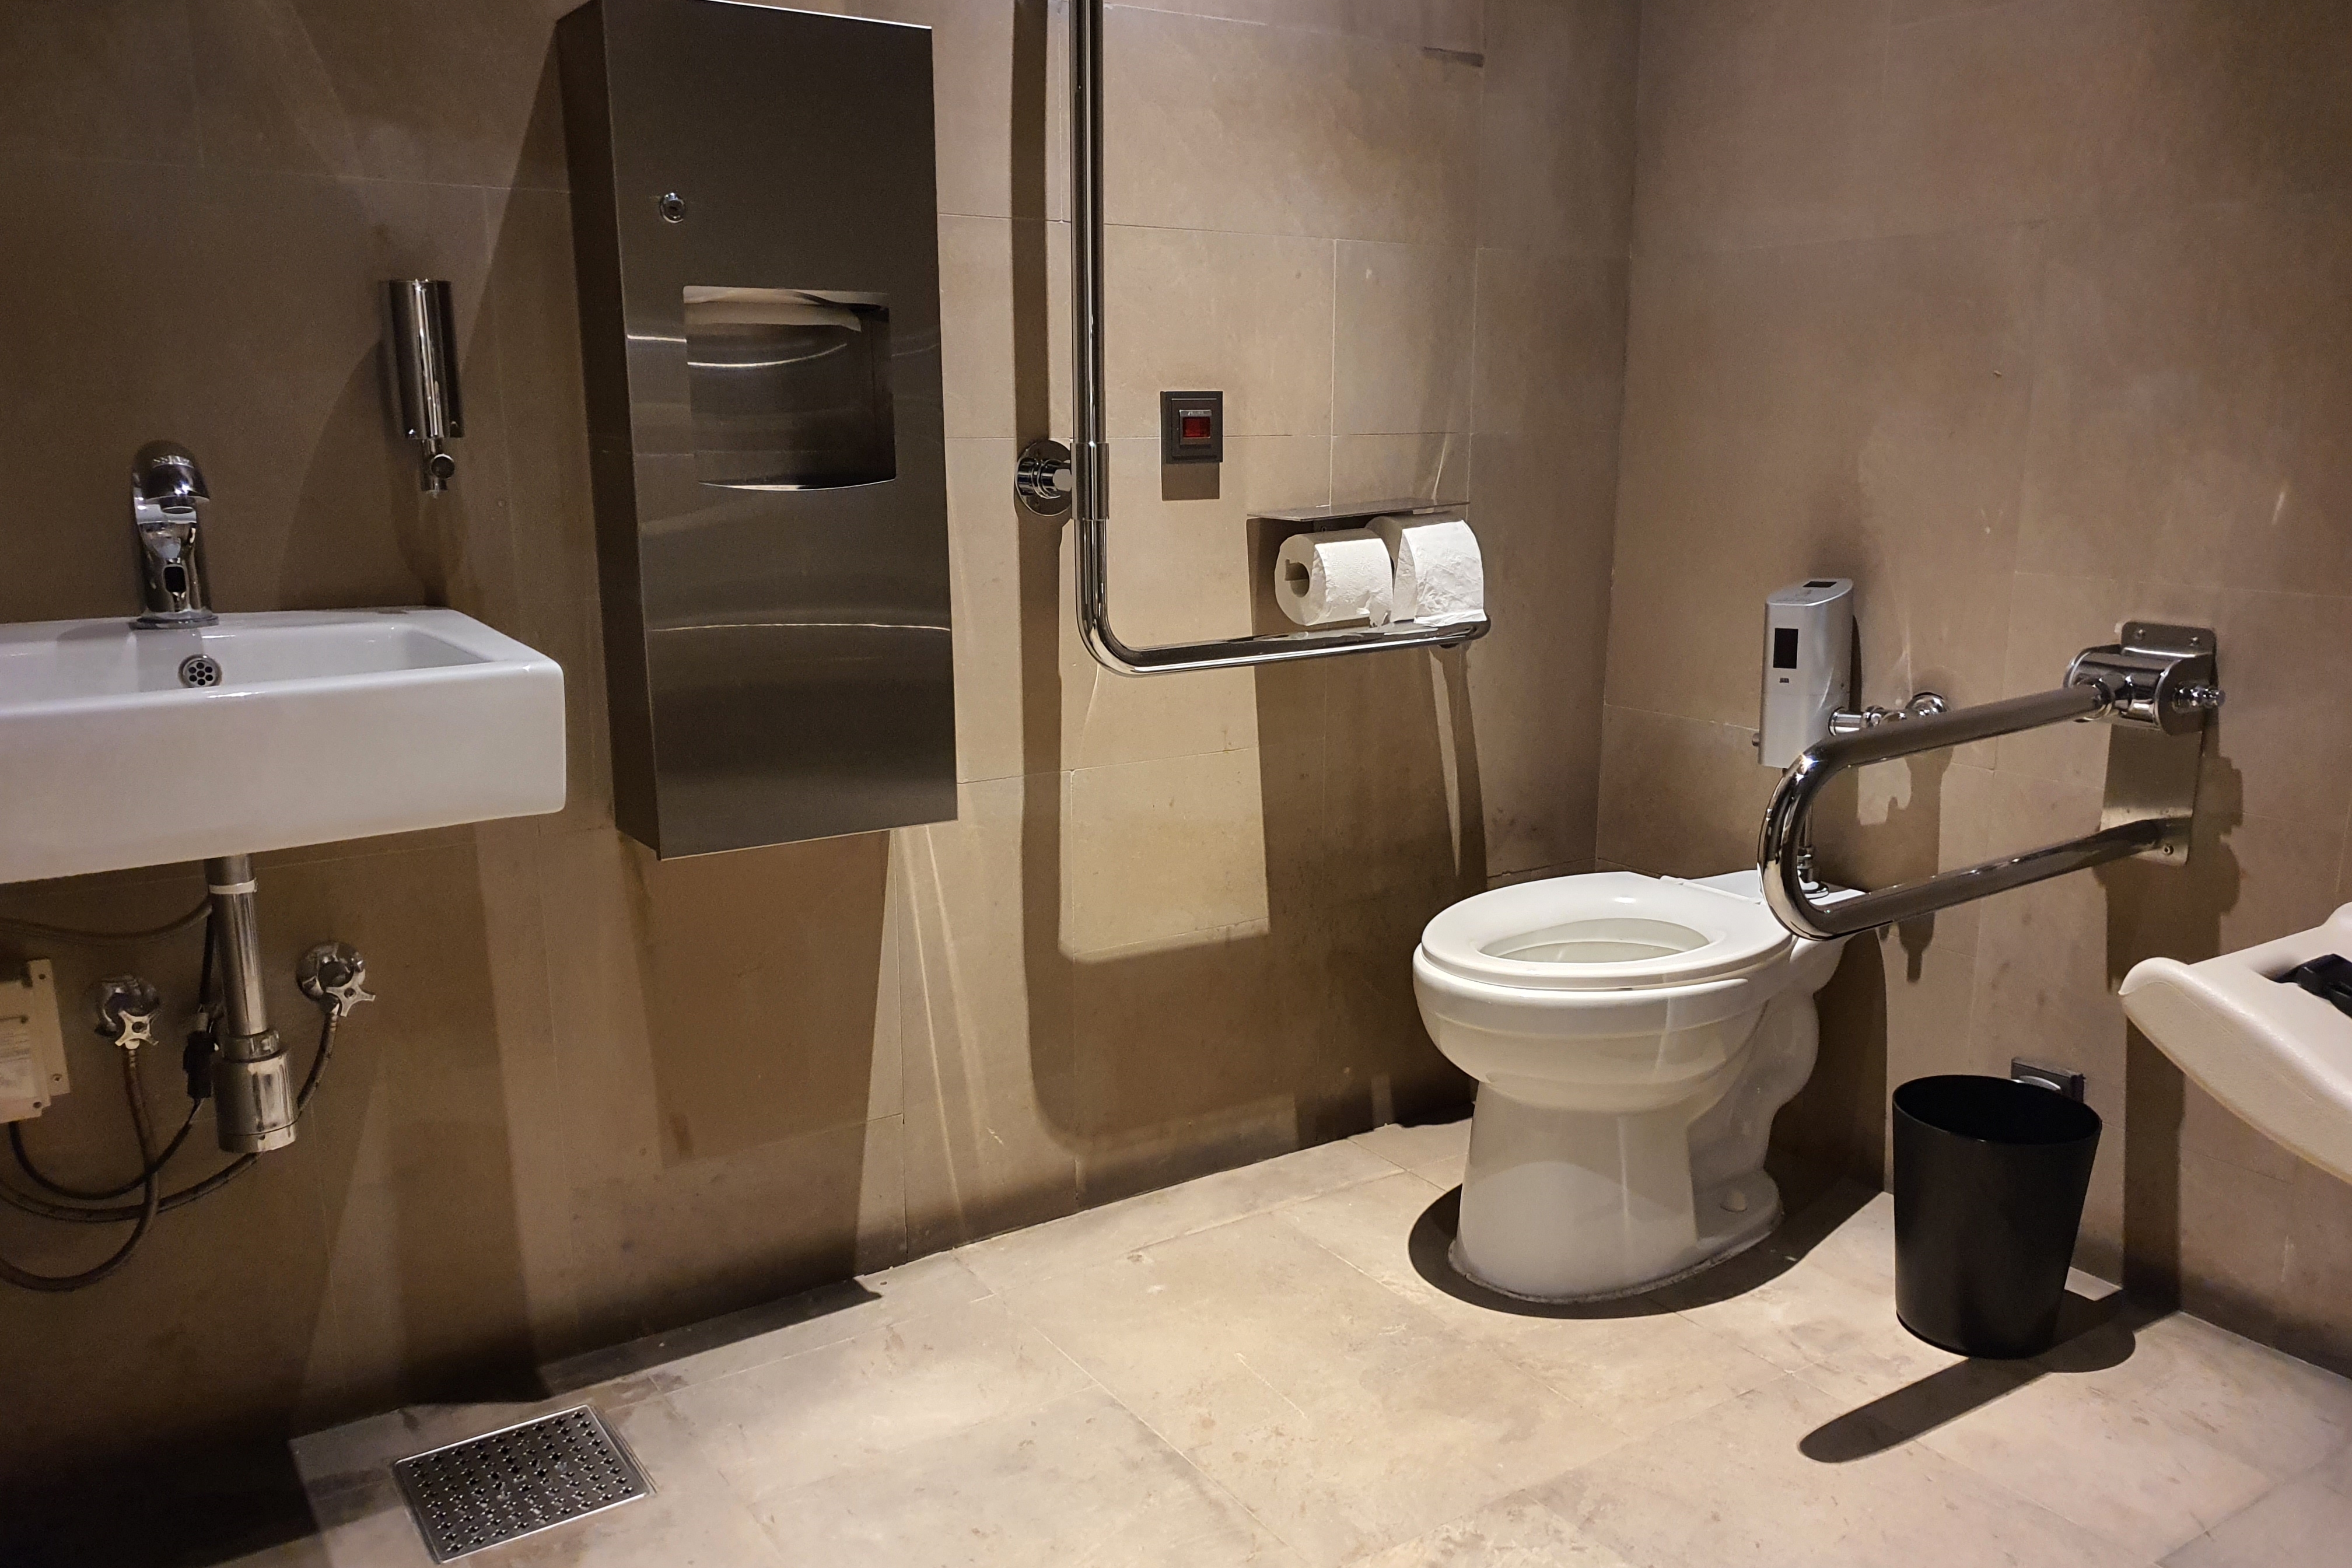 공용 화장실0 : 안전바가 설치된 장애인 화장실